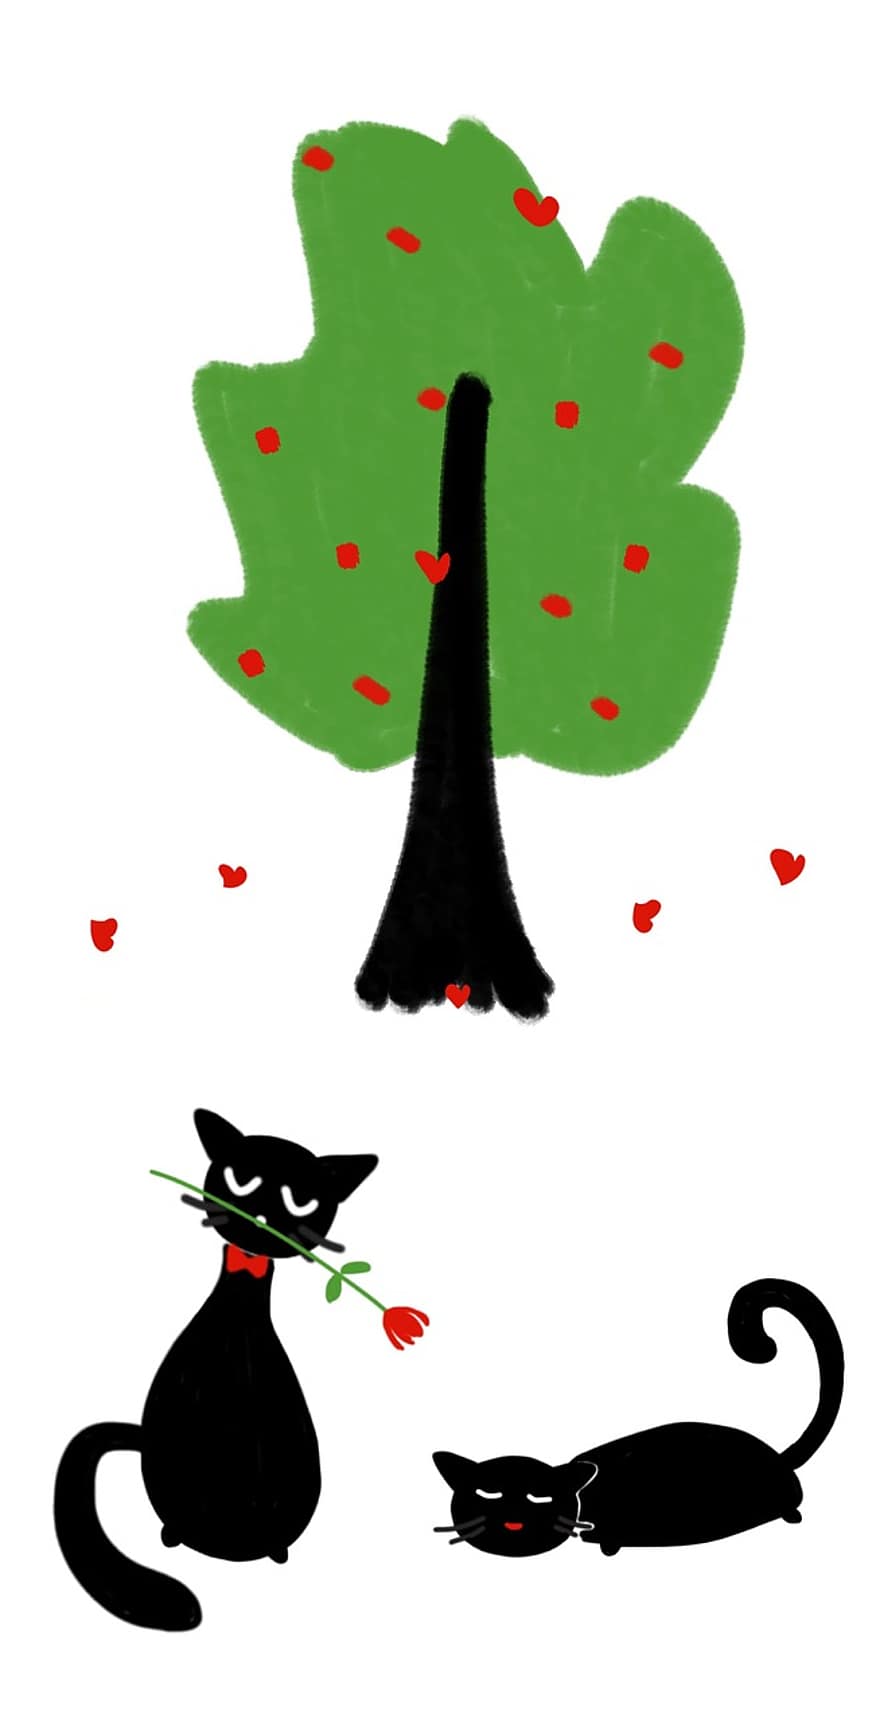 con mèo, cây, yêu và quý, ngày lễ tình nhân, tim, cây xanh, Mèo đang yêu, Mèo đen, Hoa hồng, bông hoa, lãng mạn